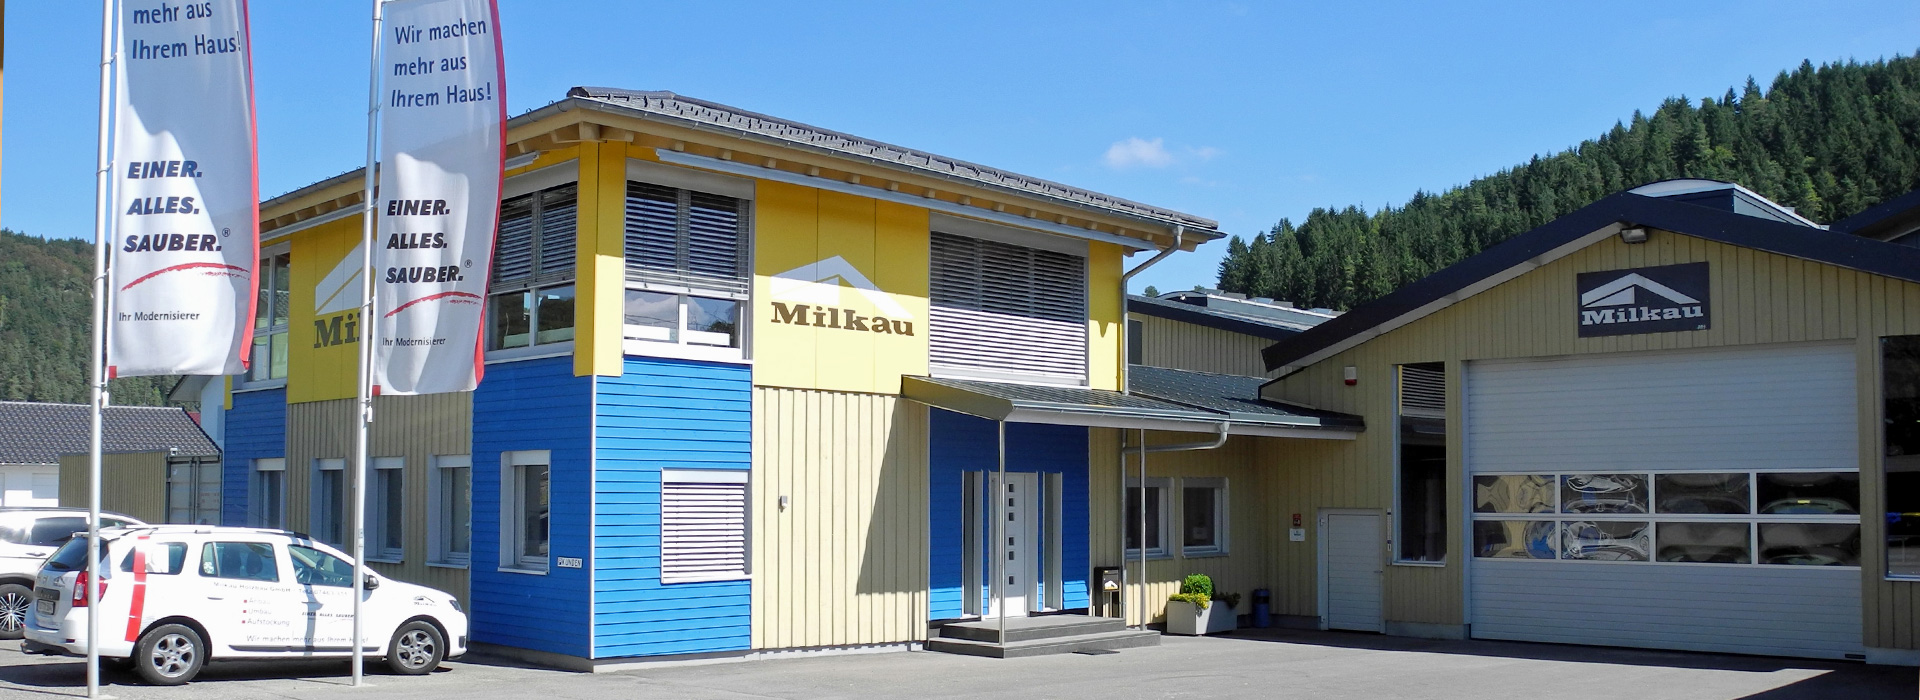 Milkau Holzbau Firmengebäude